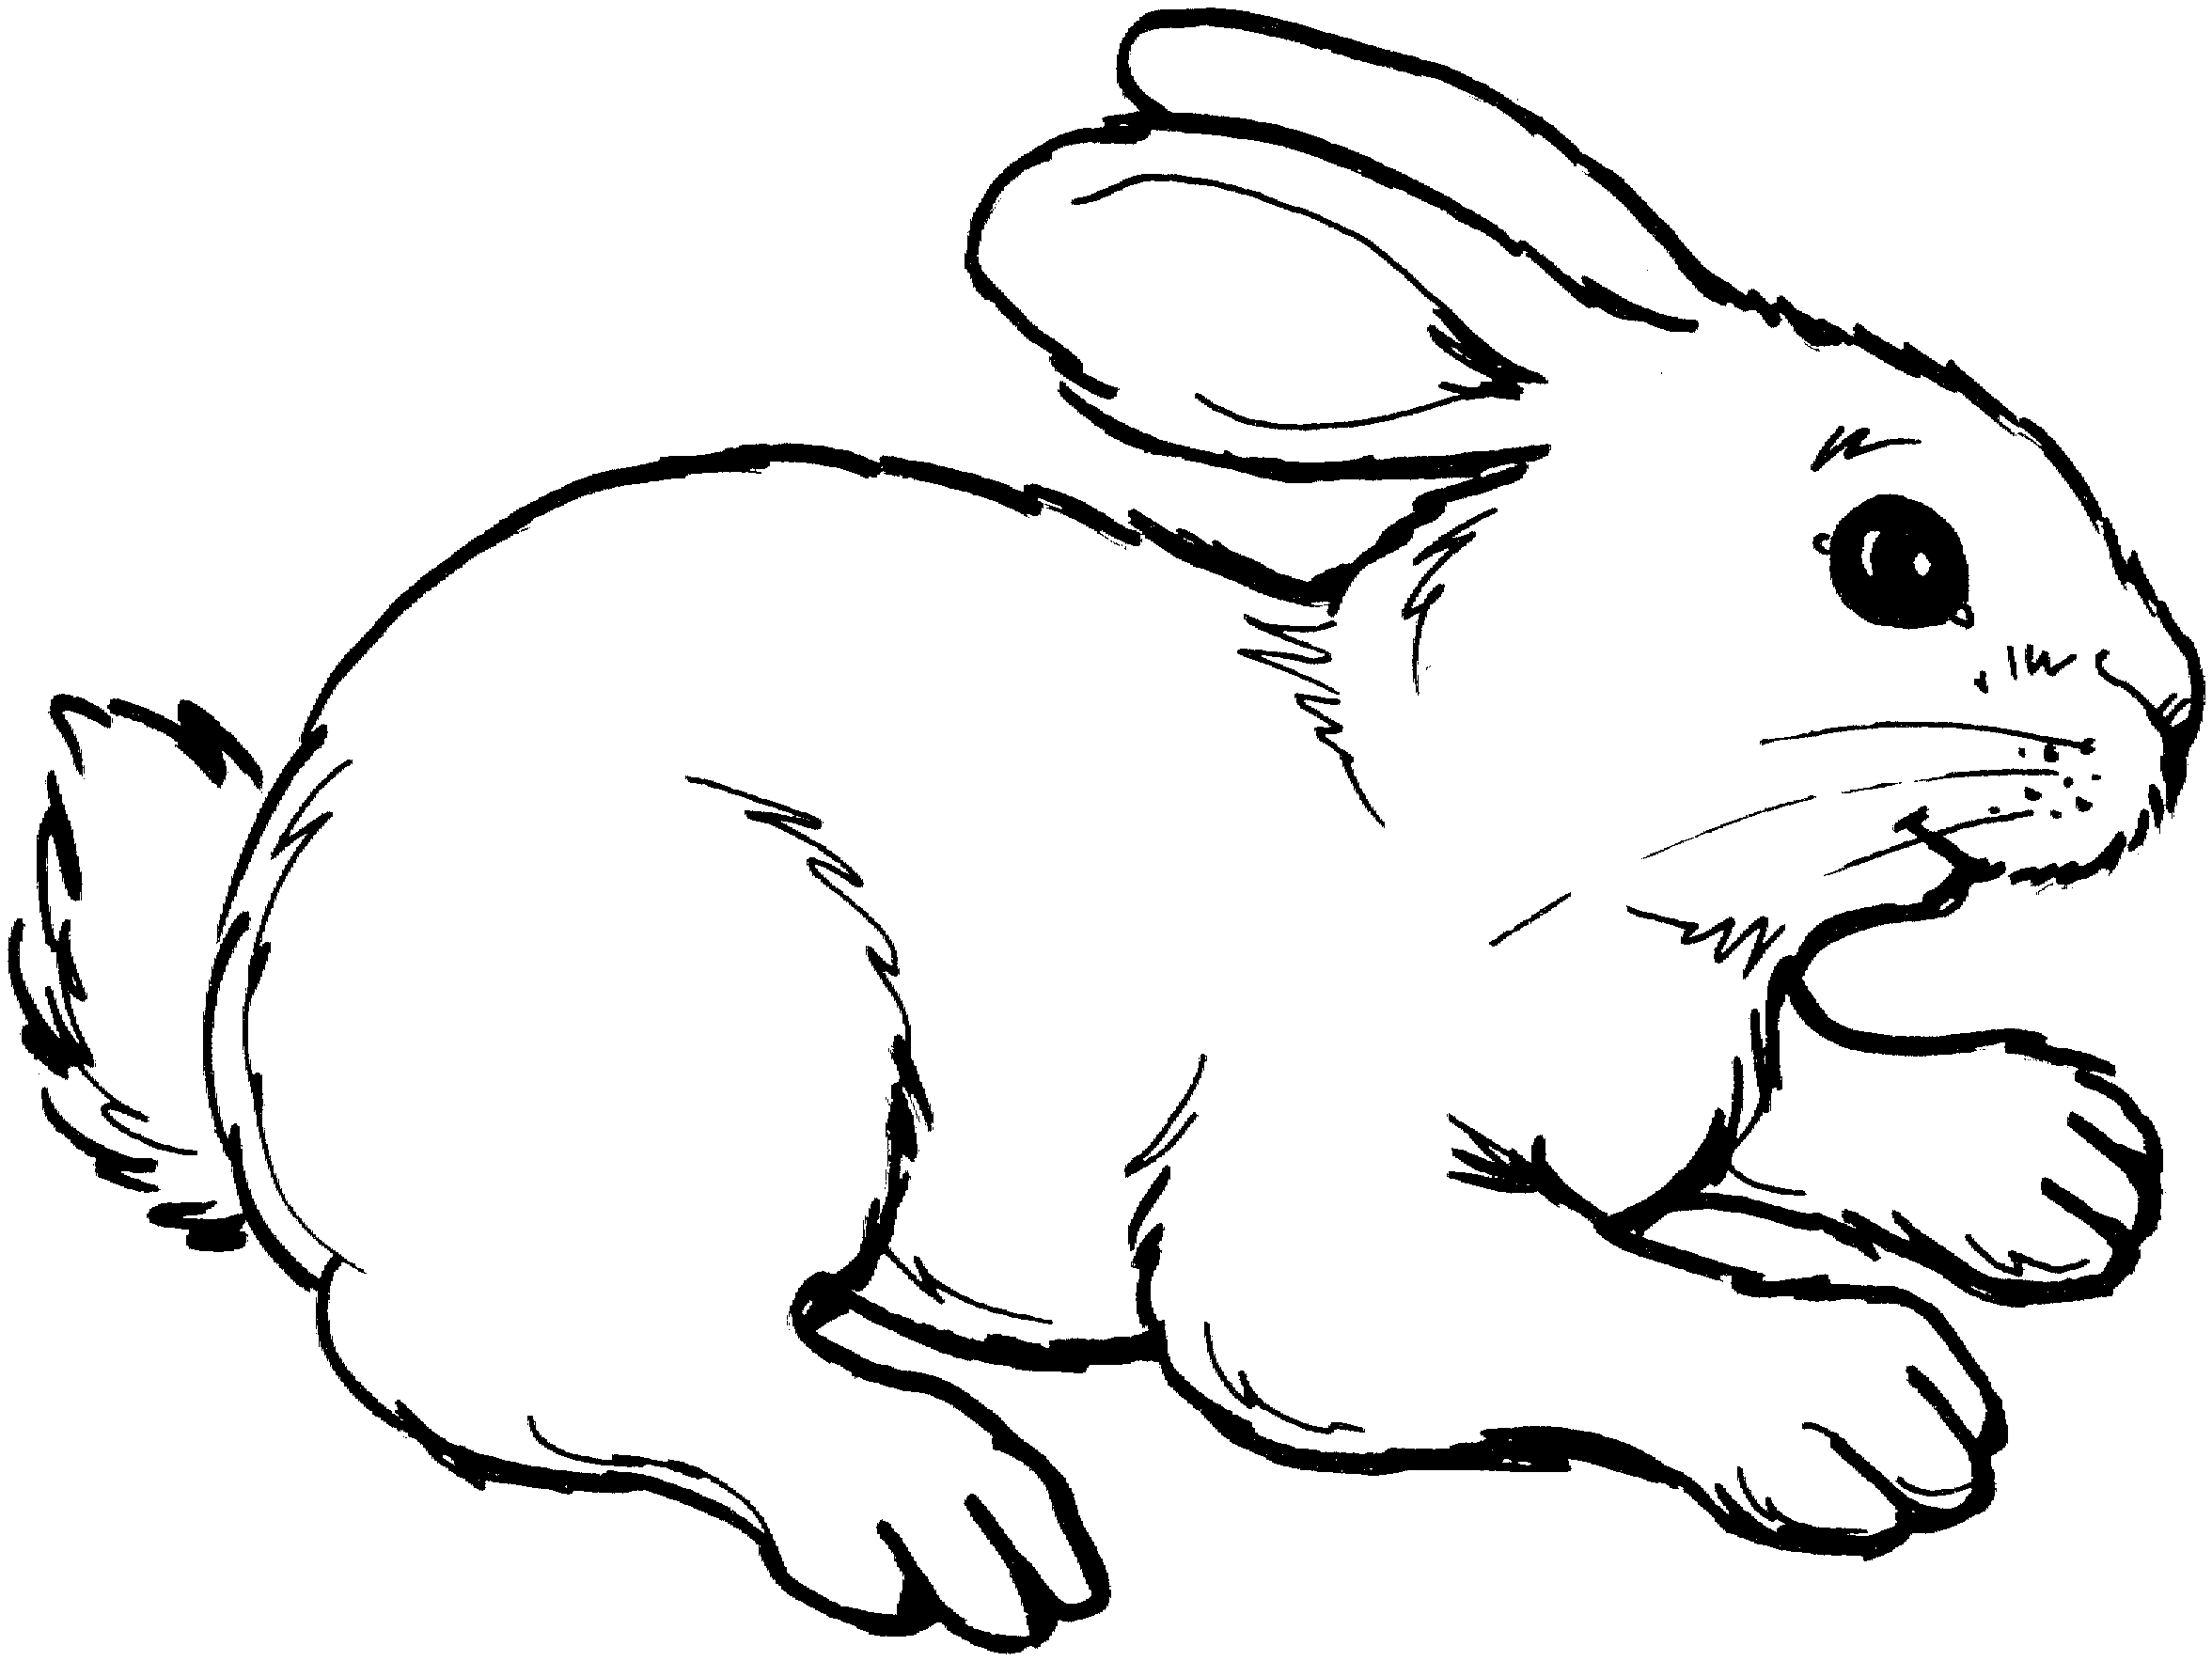 Moving bunny clip art cartoon bunny rabbits clip art images 4 